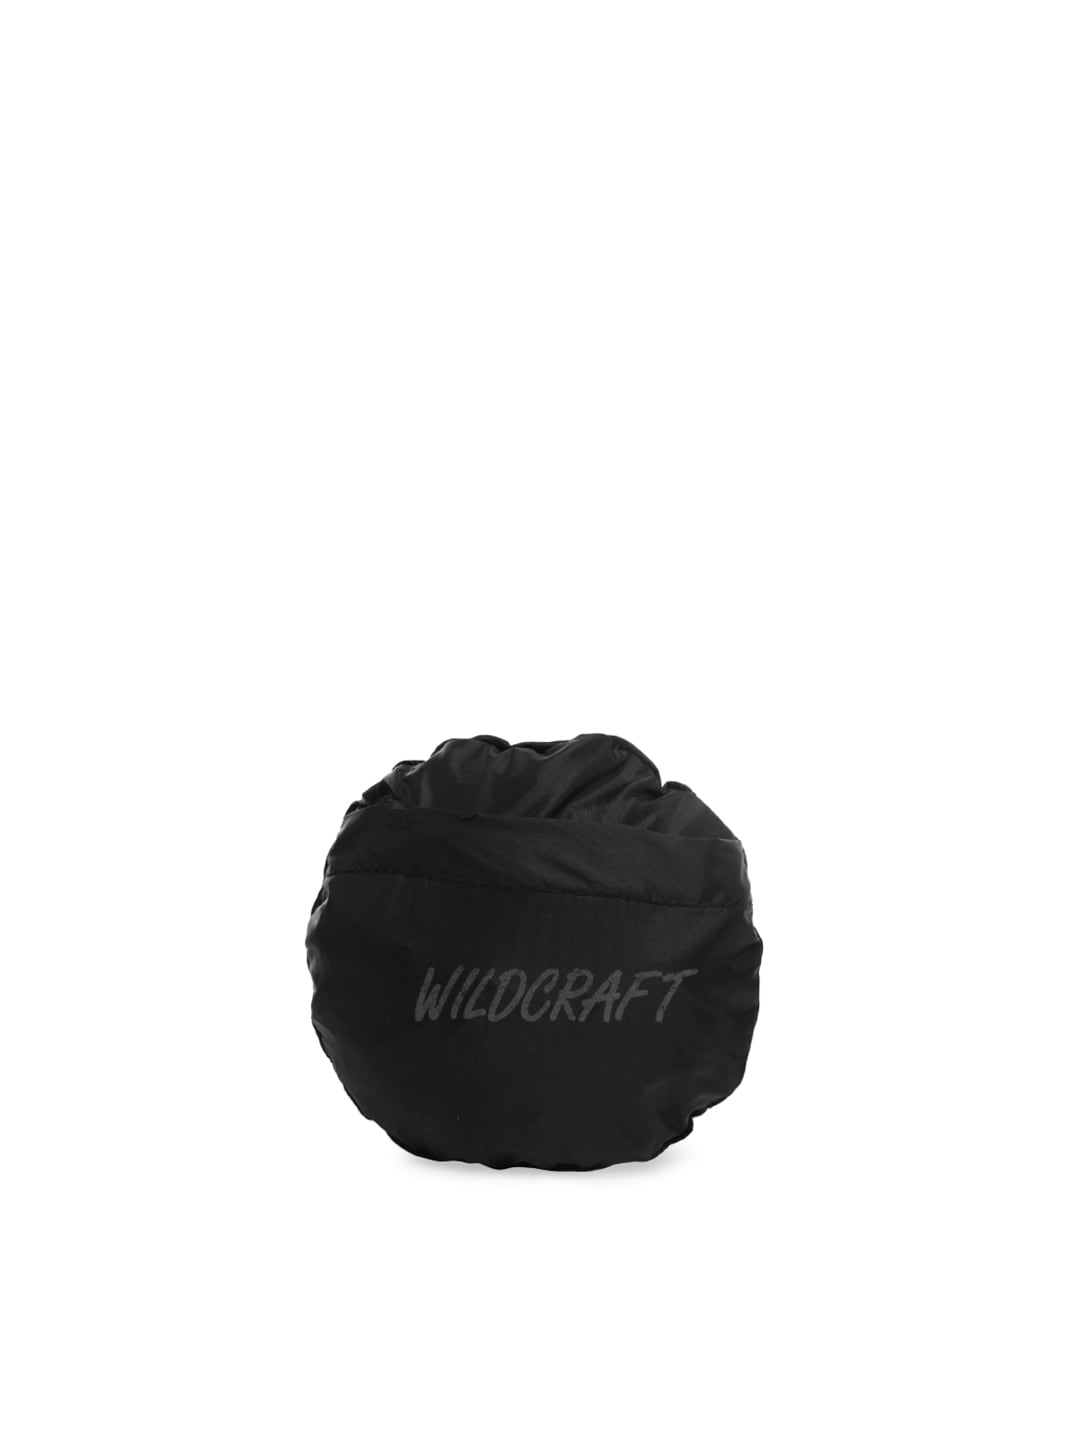 Wildcraft Unisex Black Rain Cover For Backpacks